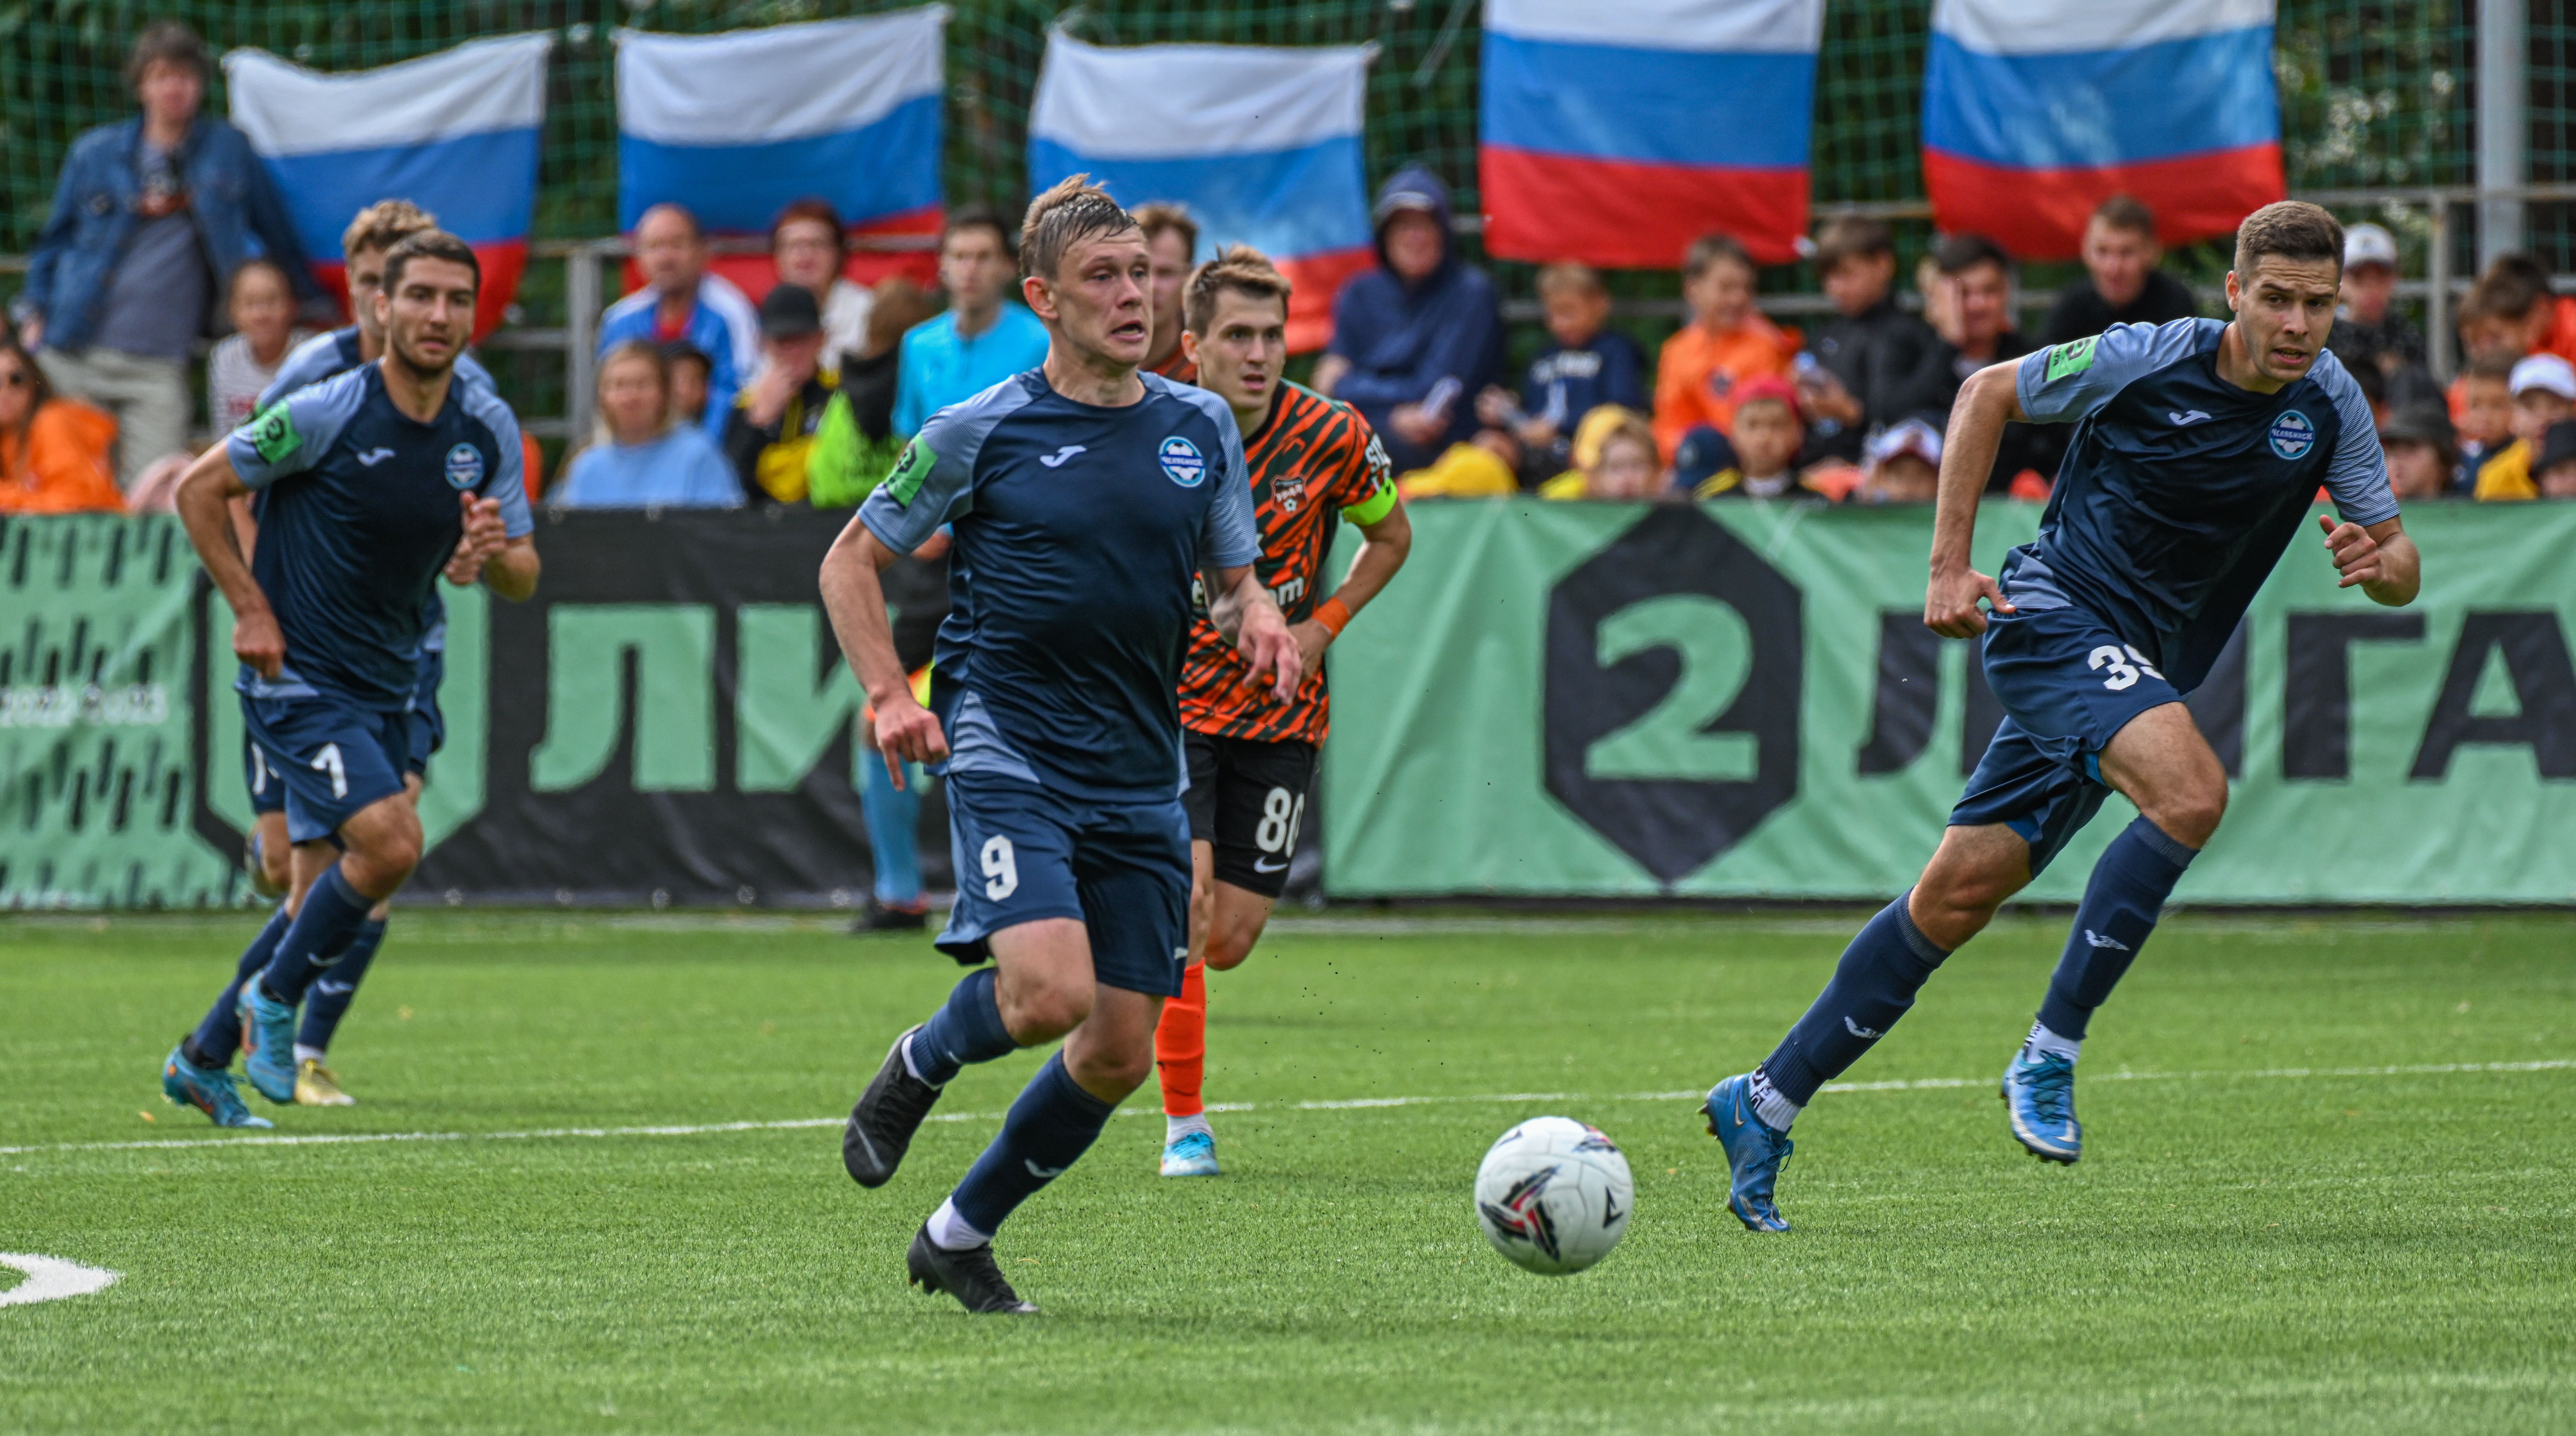 ФК «Челябинск» возглавил турнирную таблицу после пятой победы подряд